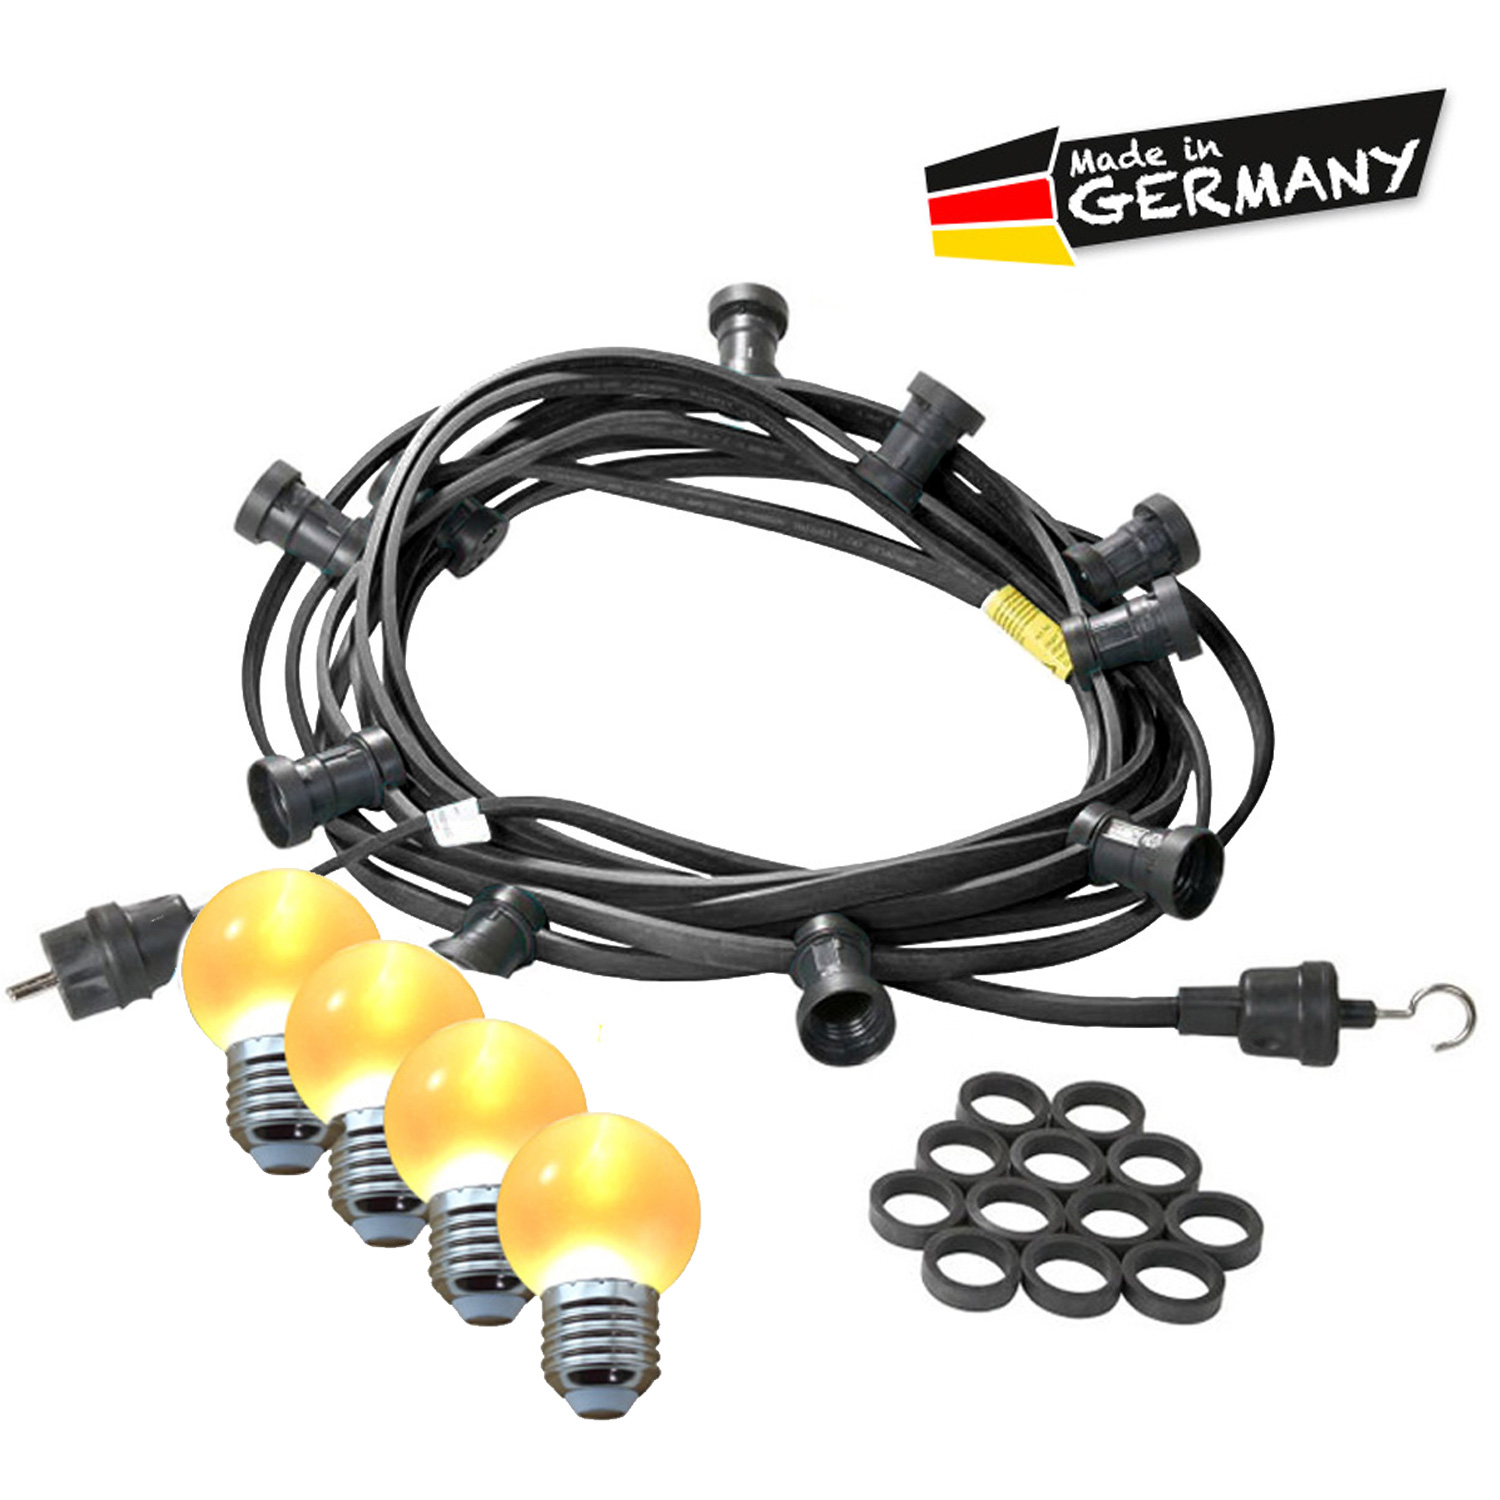 Illu-/Partylichterkette 30m - Außenlichterkette - Made in Germany - 30 ultra-warmweiße LED Kugeln